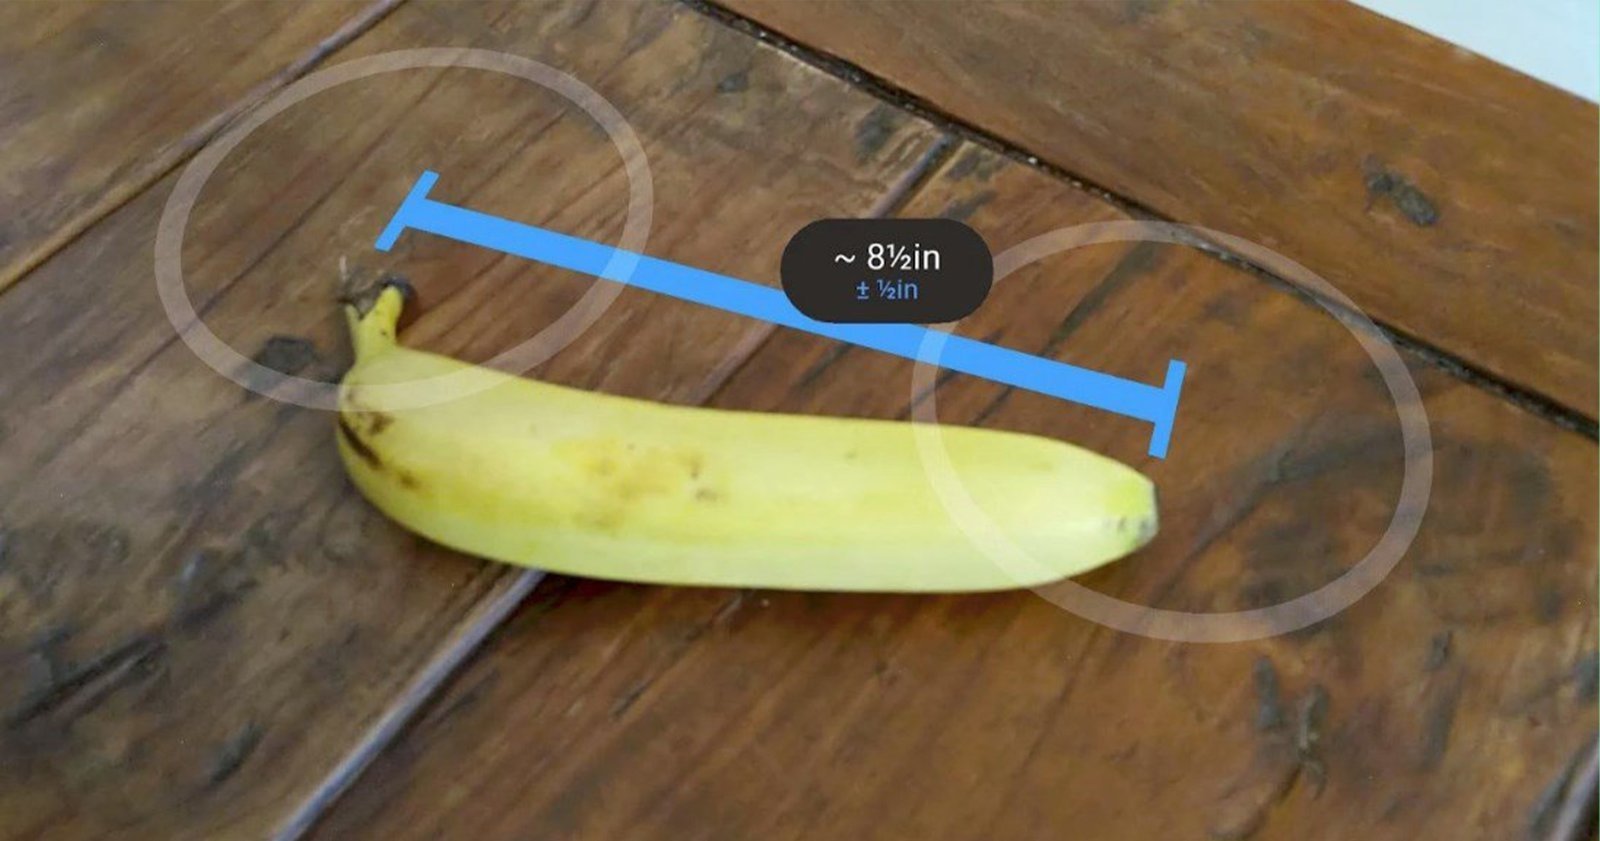 Measure, la app de Google para medir objetos con realidad aumentada